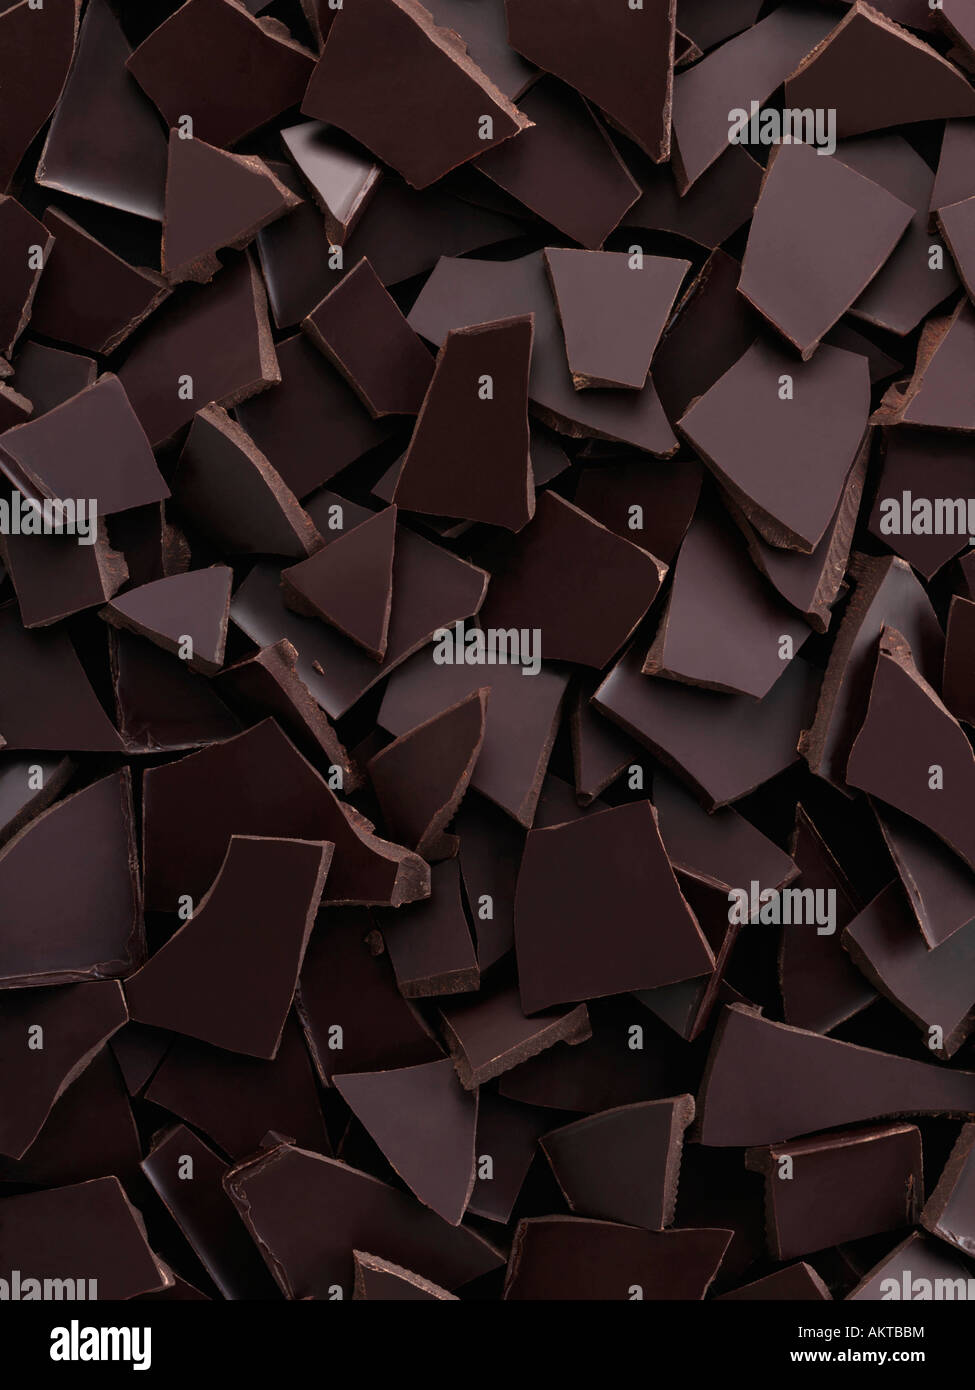 Morceaux de chocolat noir ensemble de l'image de l'alimentation éditoriale Banque D'Images